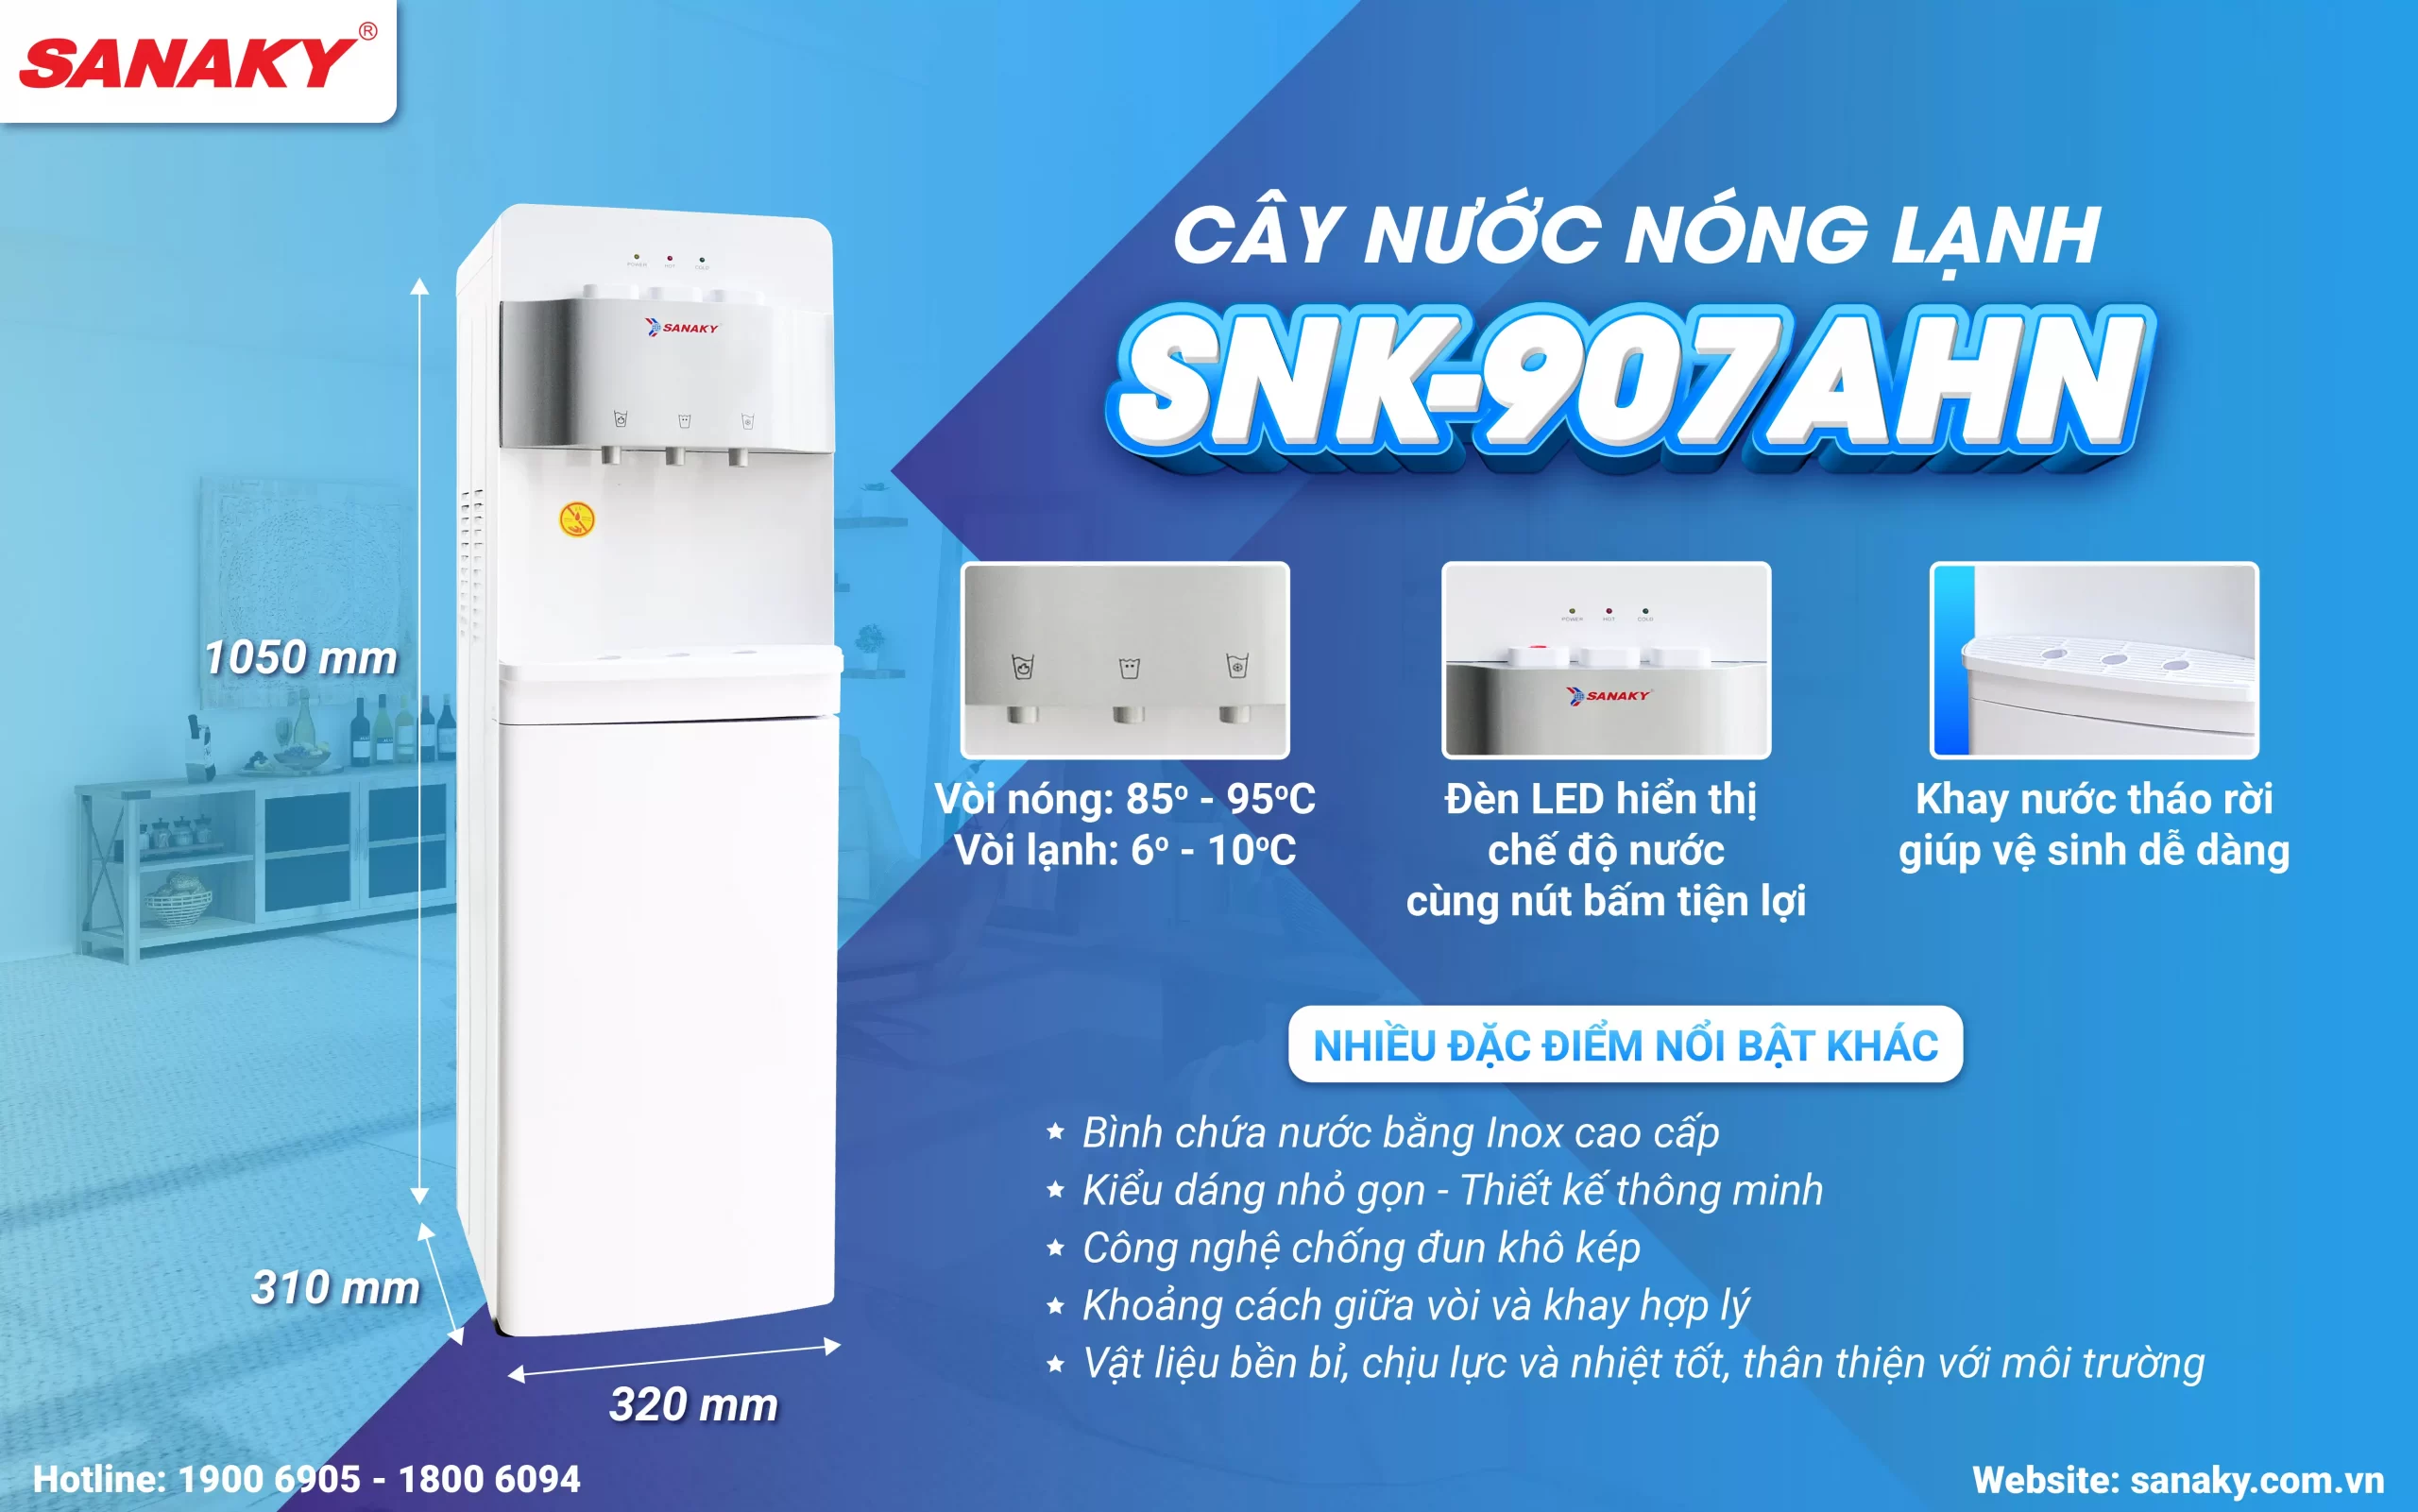 Cây nước nóng lạnh Sanaky SNK-907AHN